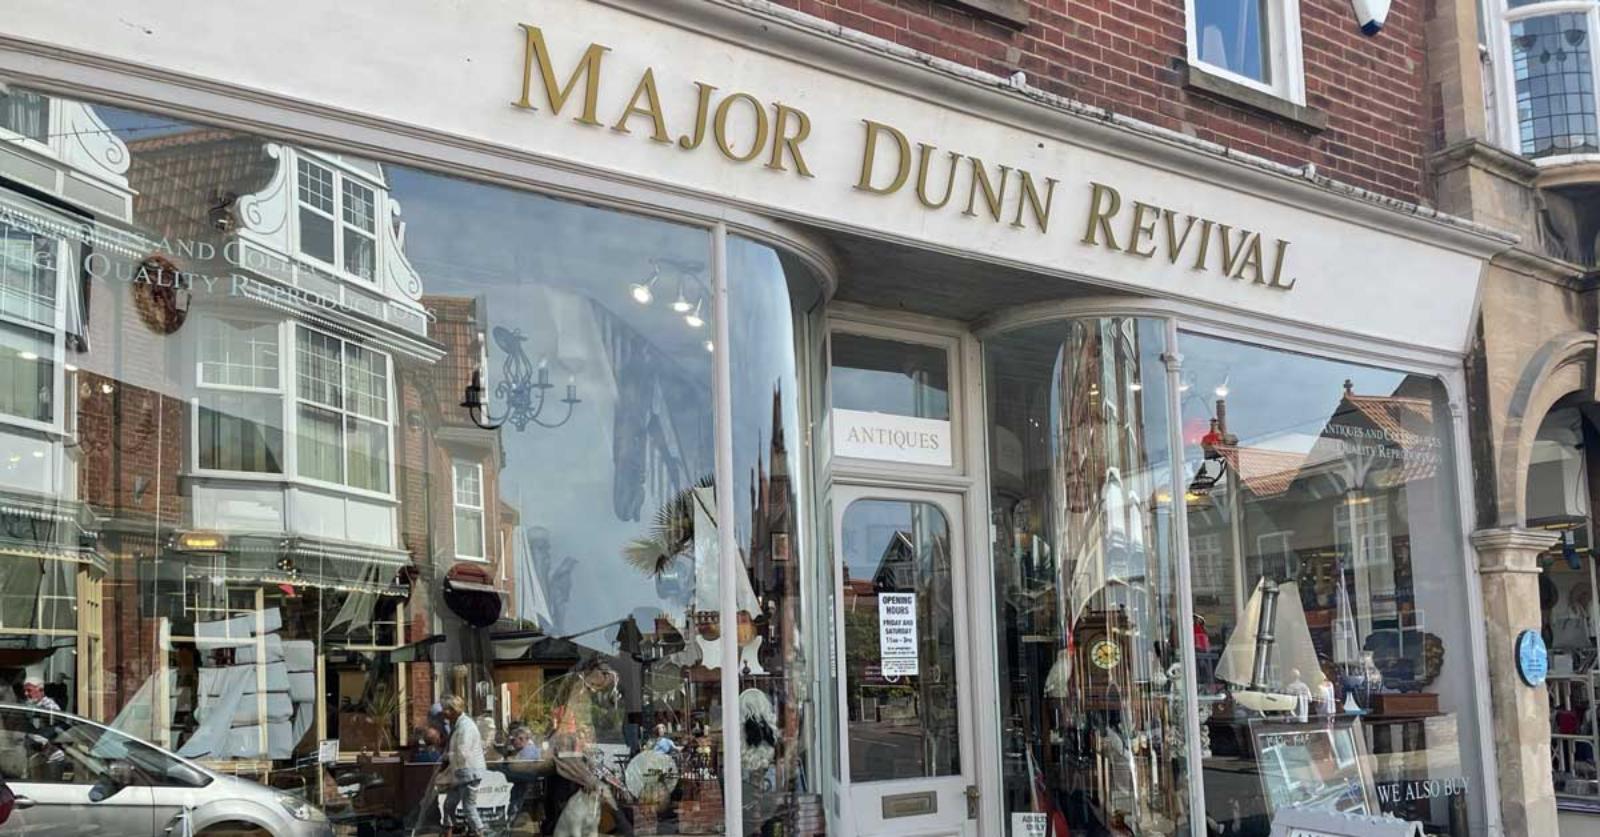 Major Dunn Revival Sheringham